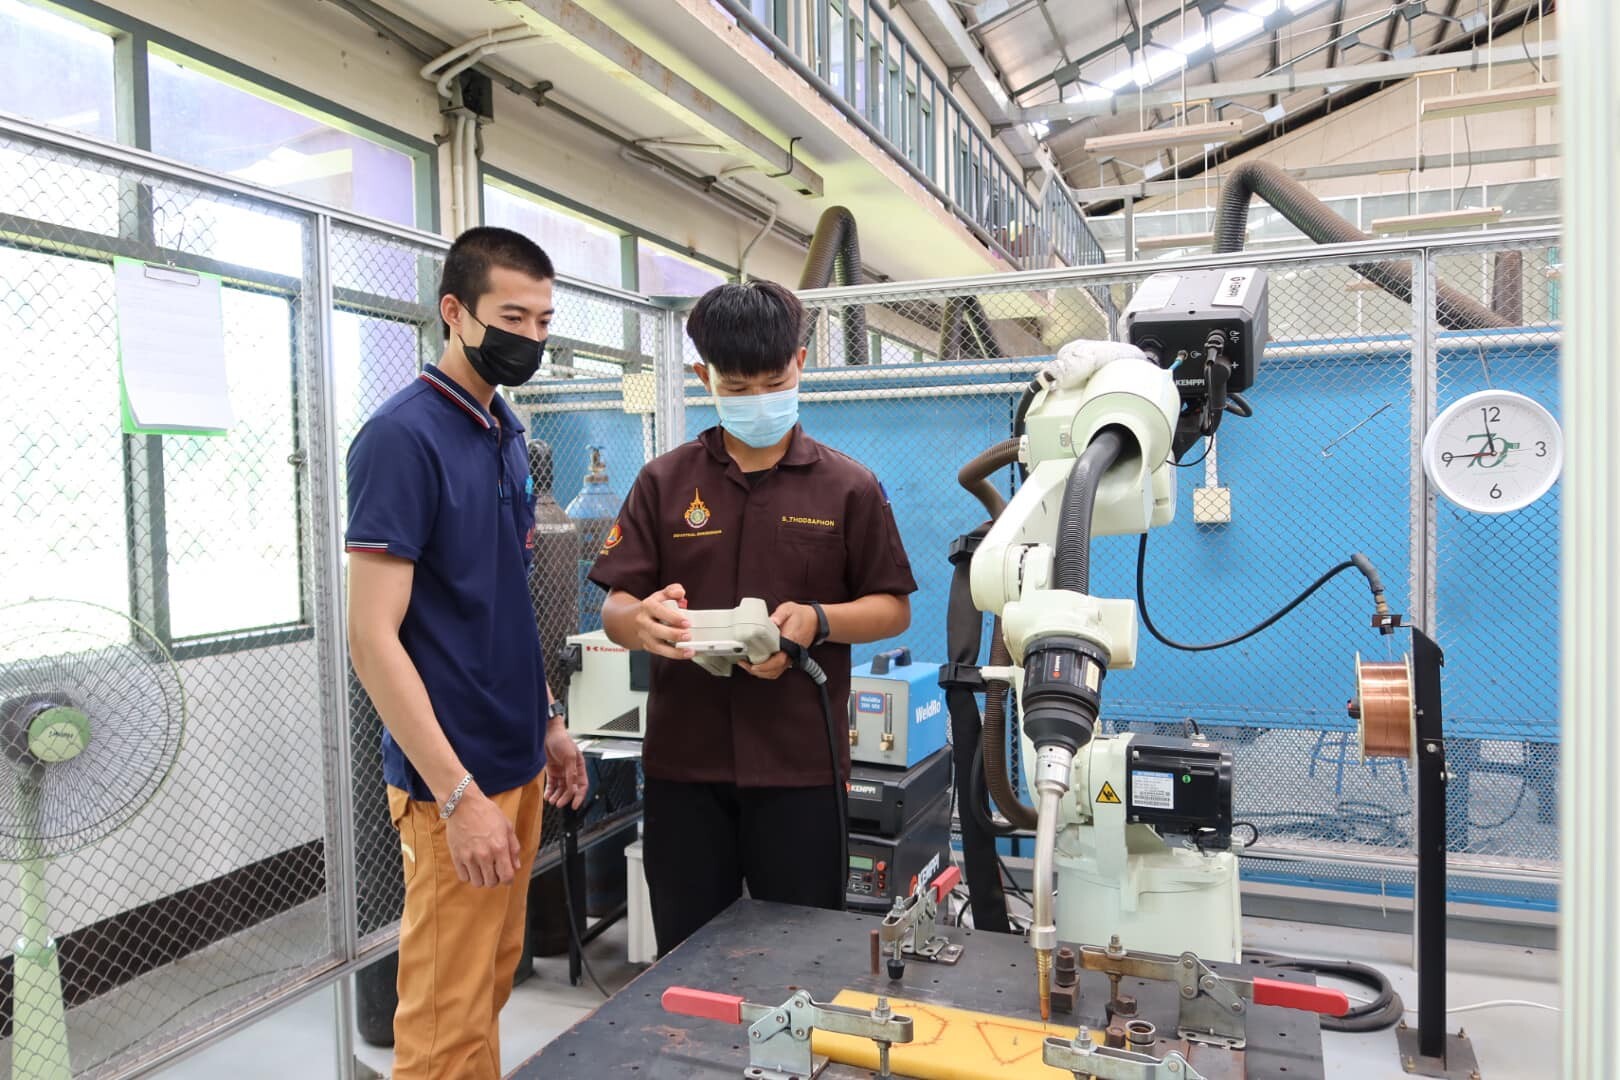 สพร.9 พิษณุโลก ยกระดับฝีมือให้กับนักศึกษาก่อนเข้าสู่ตลาดแรงงาน ฝึกอบรมหลักสูตรเทคโนโลยีการเชื่อมด้วยหุ่นยนต์